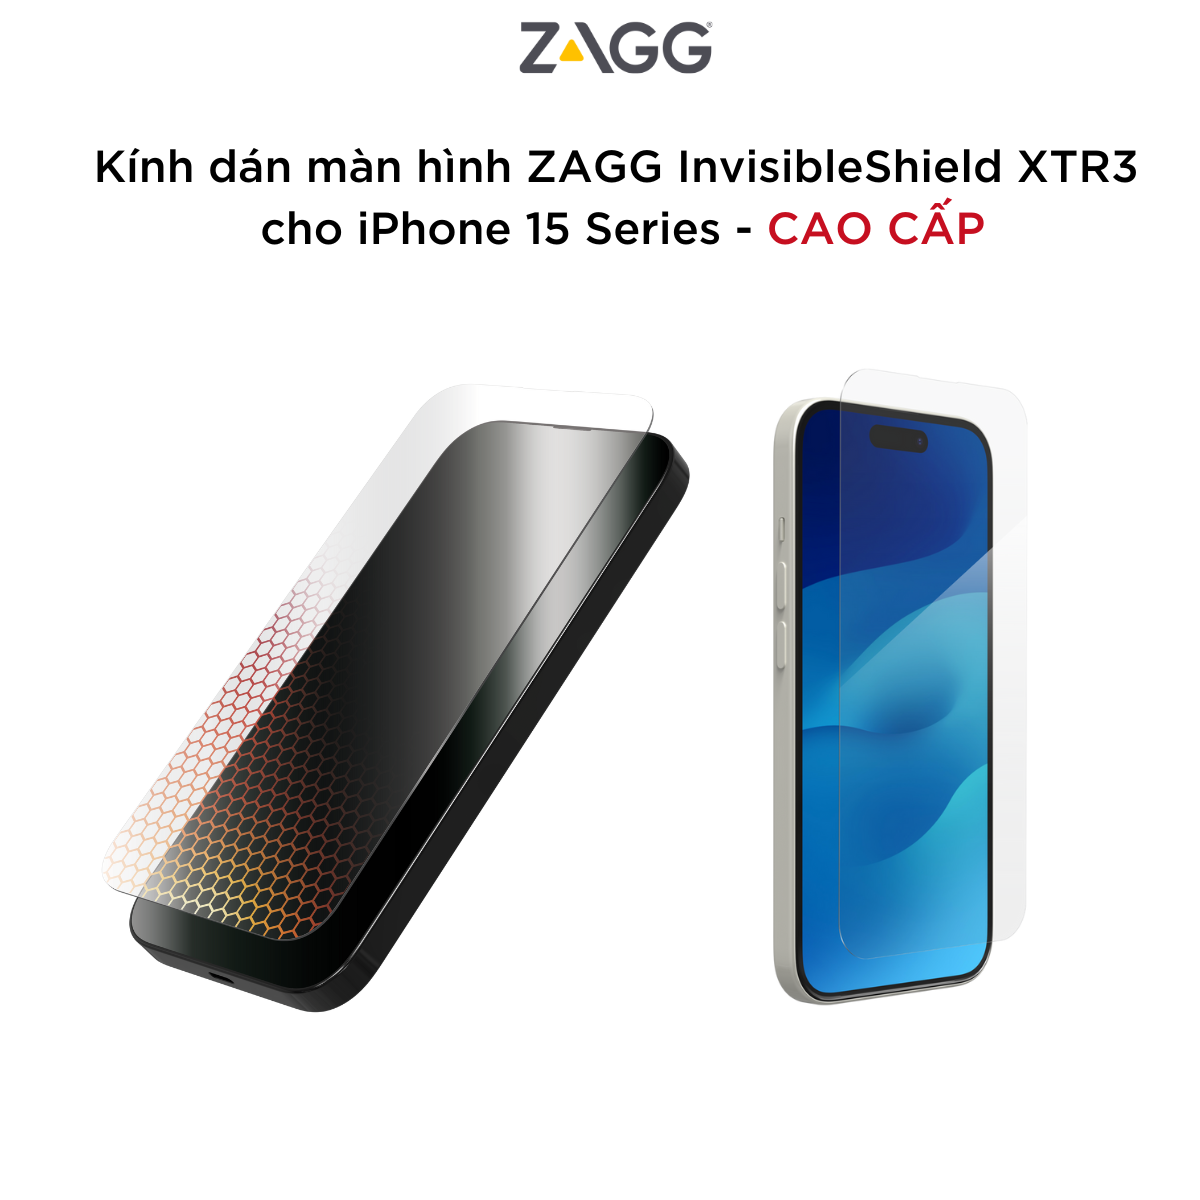 Kính dán màn hình ZAGG InvisibleShield XTR3 cho iPhone 15 Series  - Siêu chống ánh sáng xanh - Hàng chính hãng